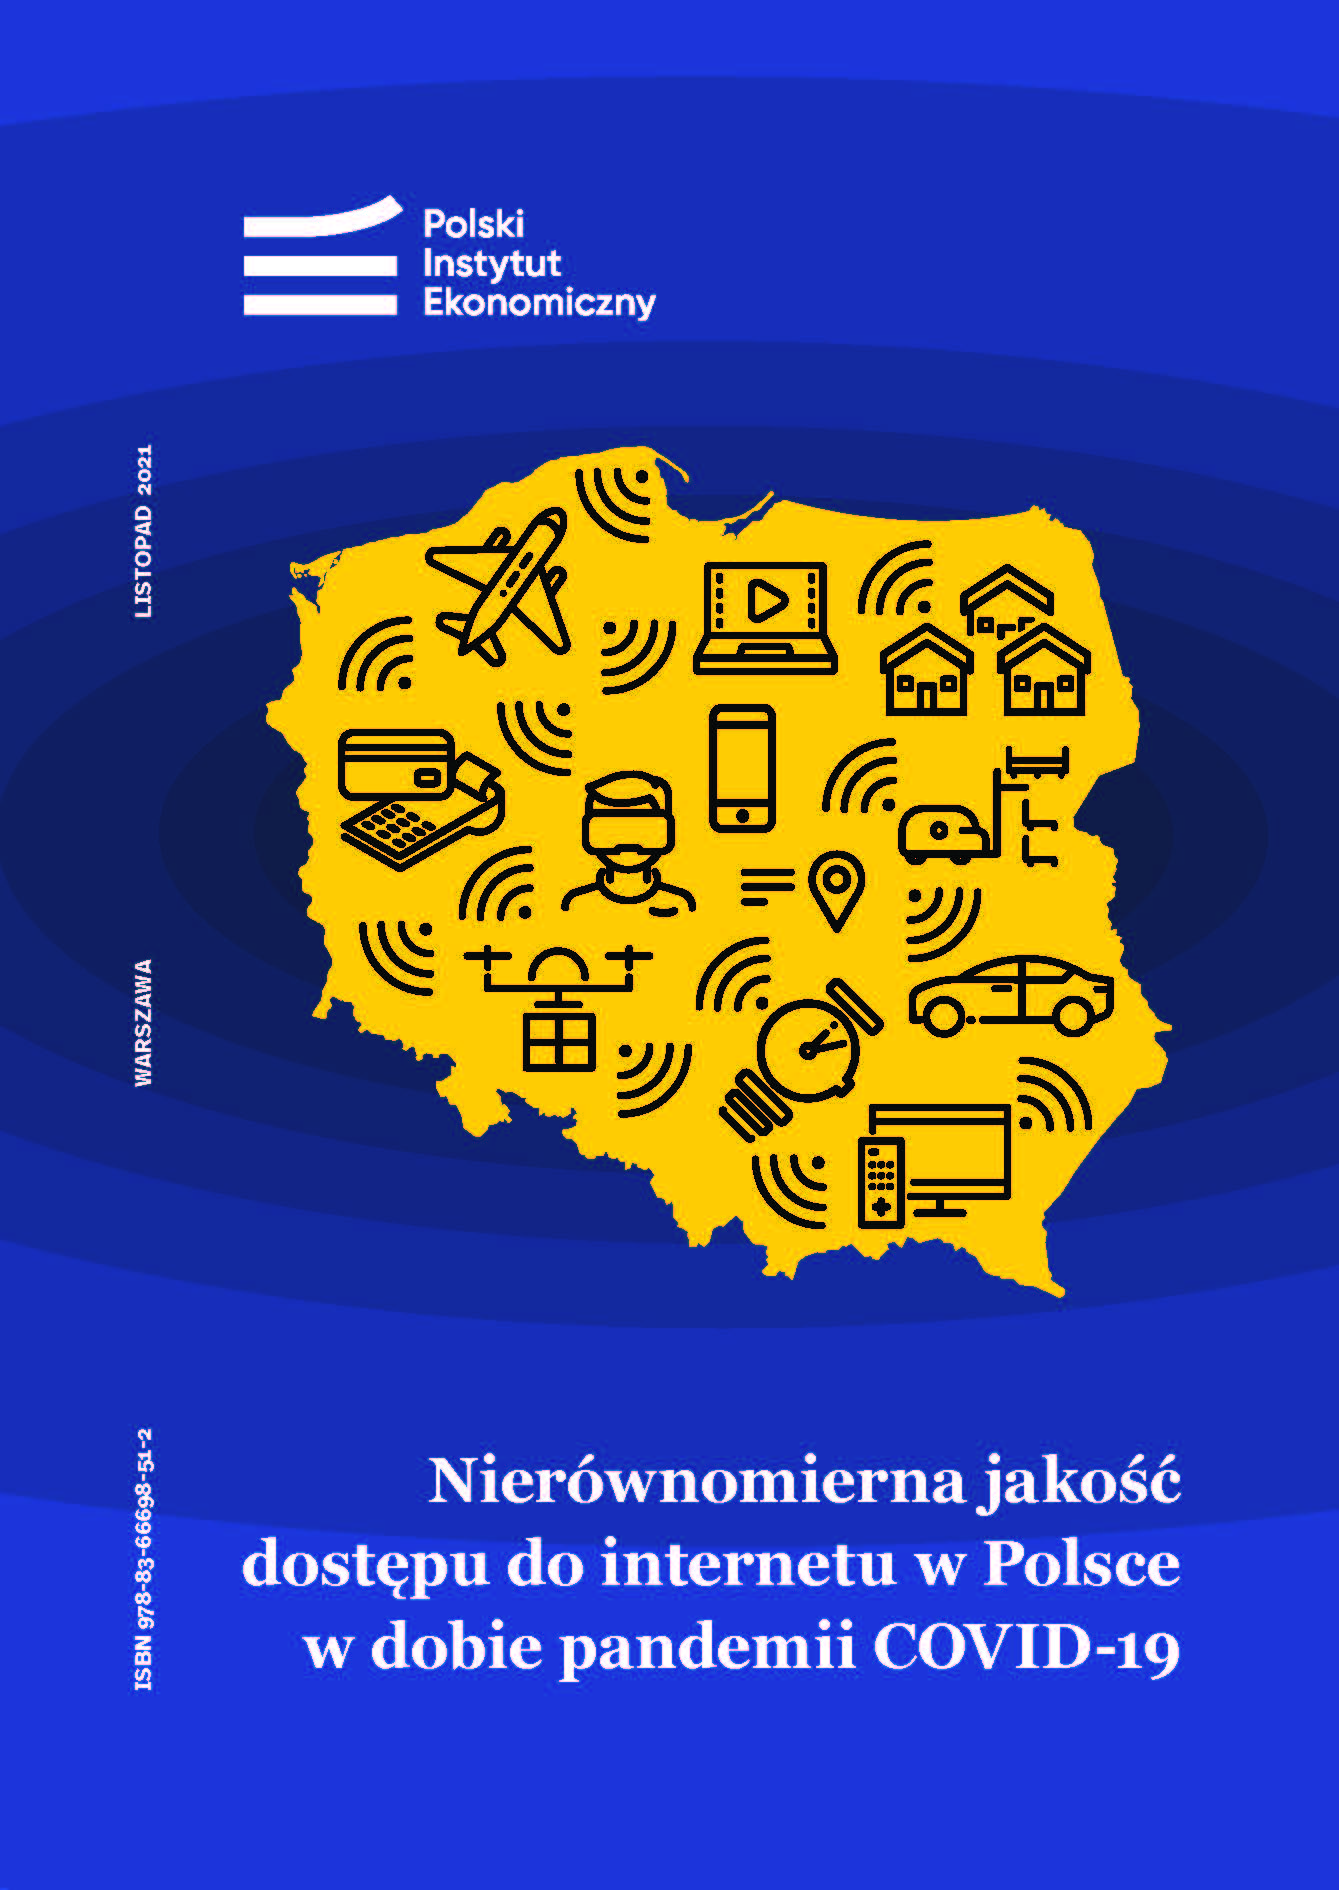 Pandemia uwydatniła nierówności w dostępie do internetu i potrzebę szybkiego rozwoju sieci 5G w Polsce